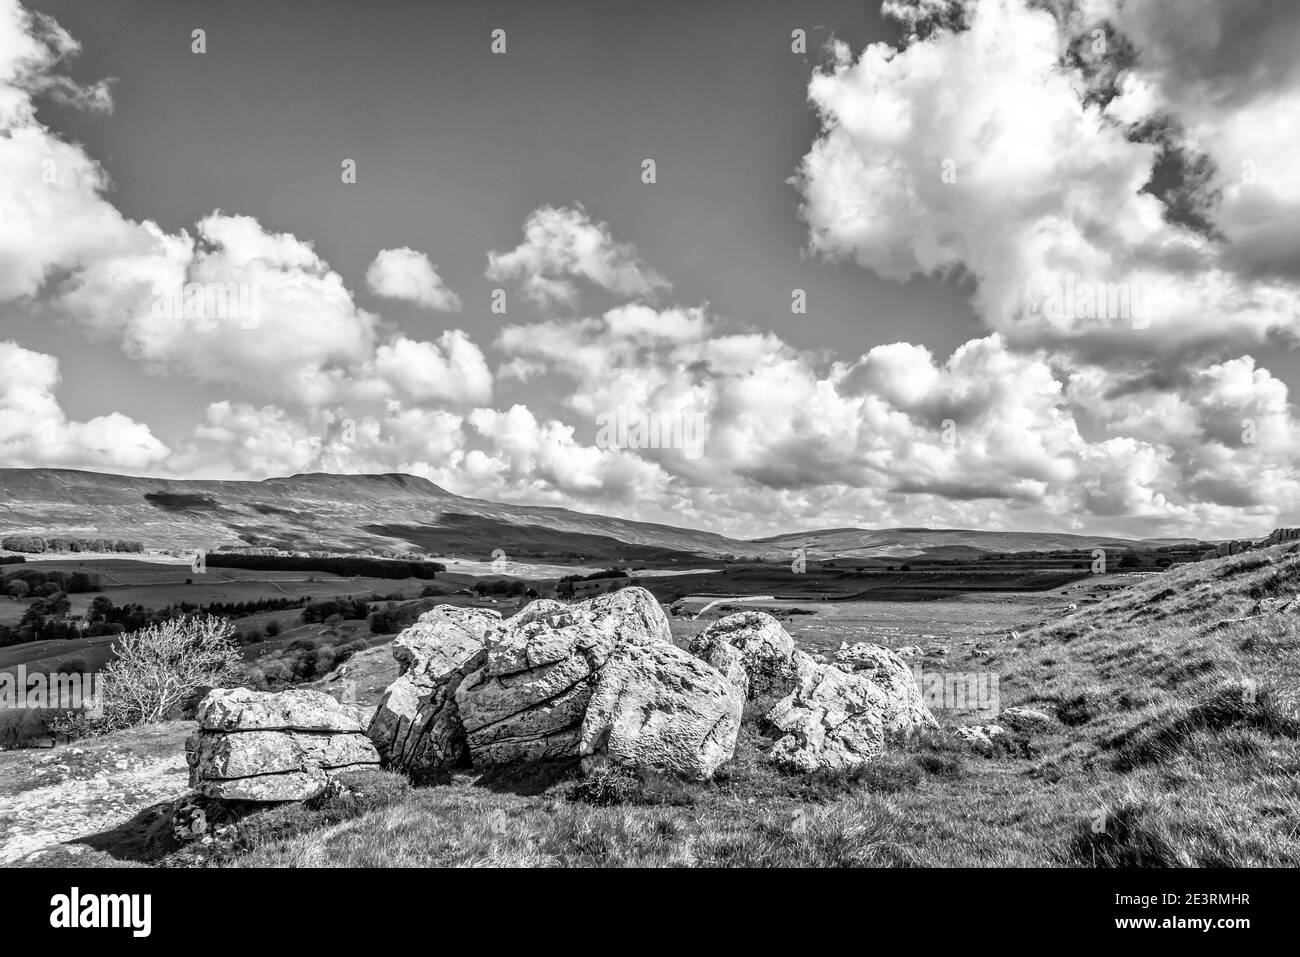 Angleterre. Fabuleux paysage d'été en monochrome de Whernside le plus haut des Yorkshire Dales trois sommets vus ici depuis le dessus de la chapelle le Dale avec des blocs de calcaire, reliques de l'ère glaciaire. Banque D'Images